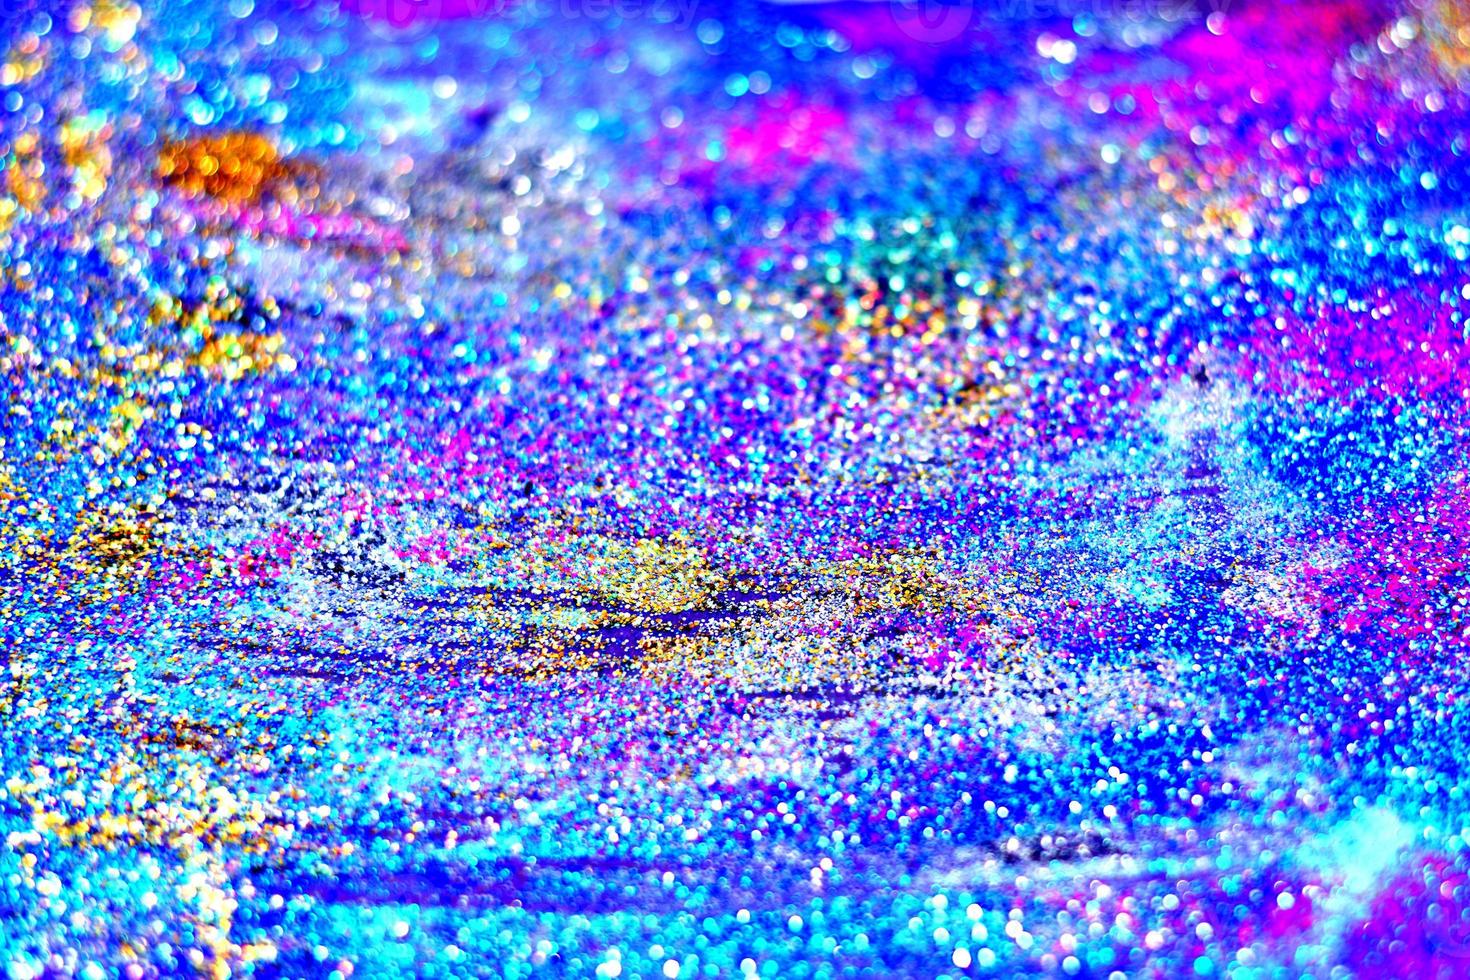 bokeh glitter kleurrijke wazig abstracte achtergrond voor verjaardag, jubileum, bruiloft, oudejaarsavond of kerst foto